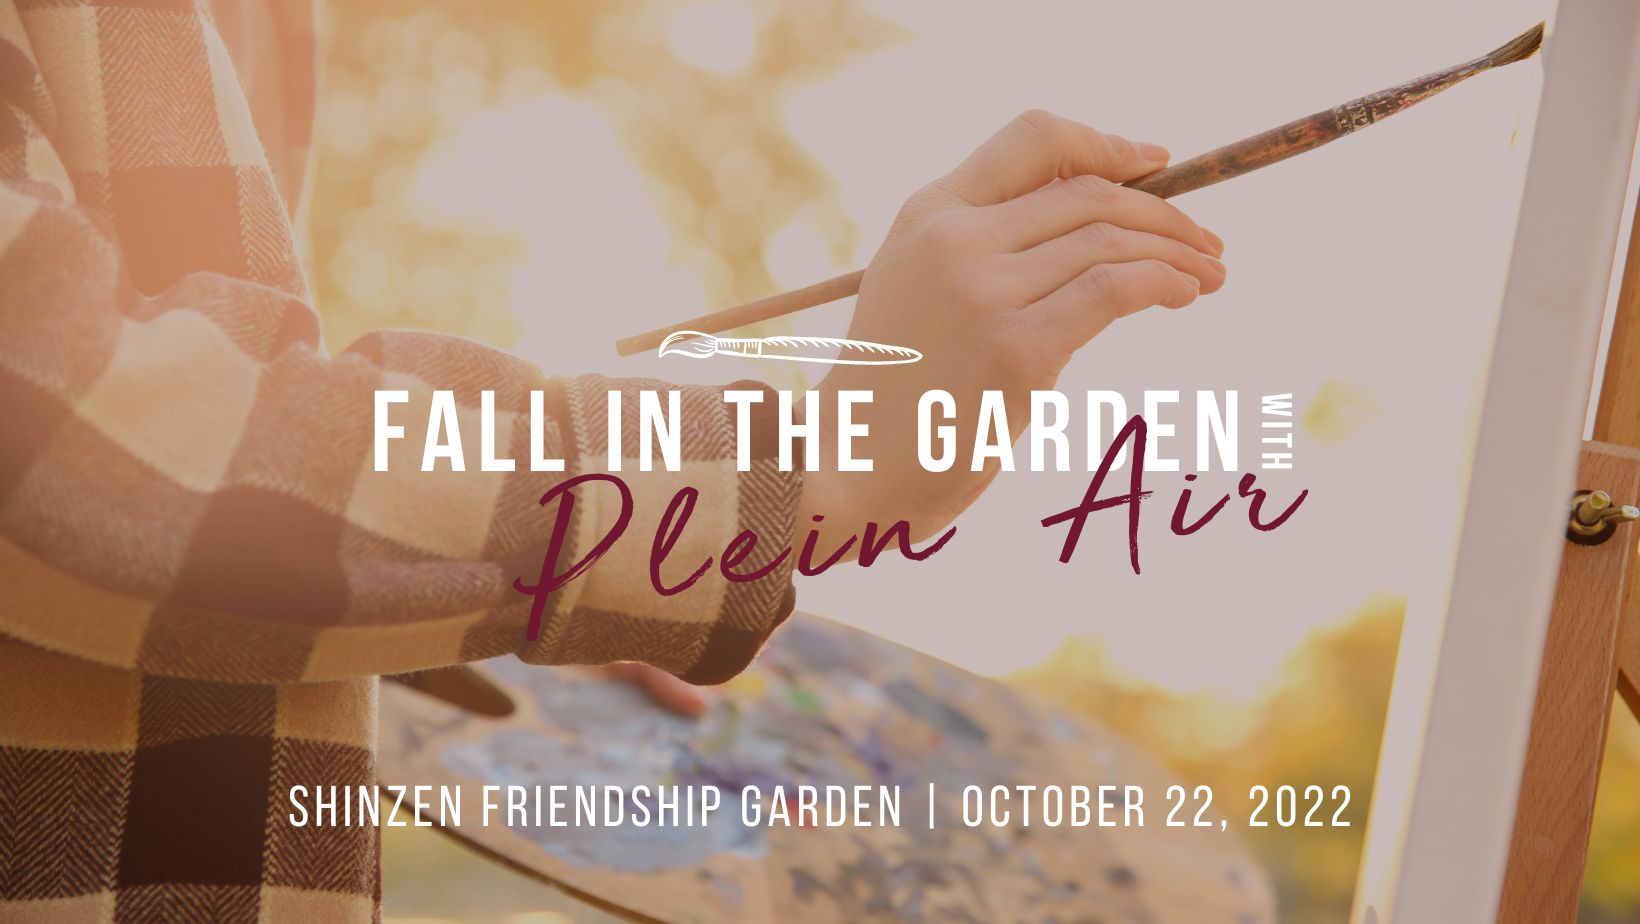 Fall in the Garden with Plein Air Artist in Garden